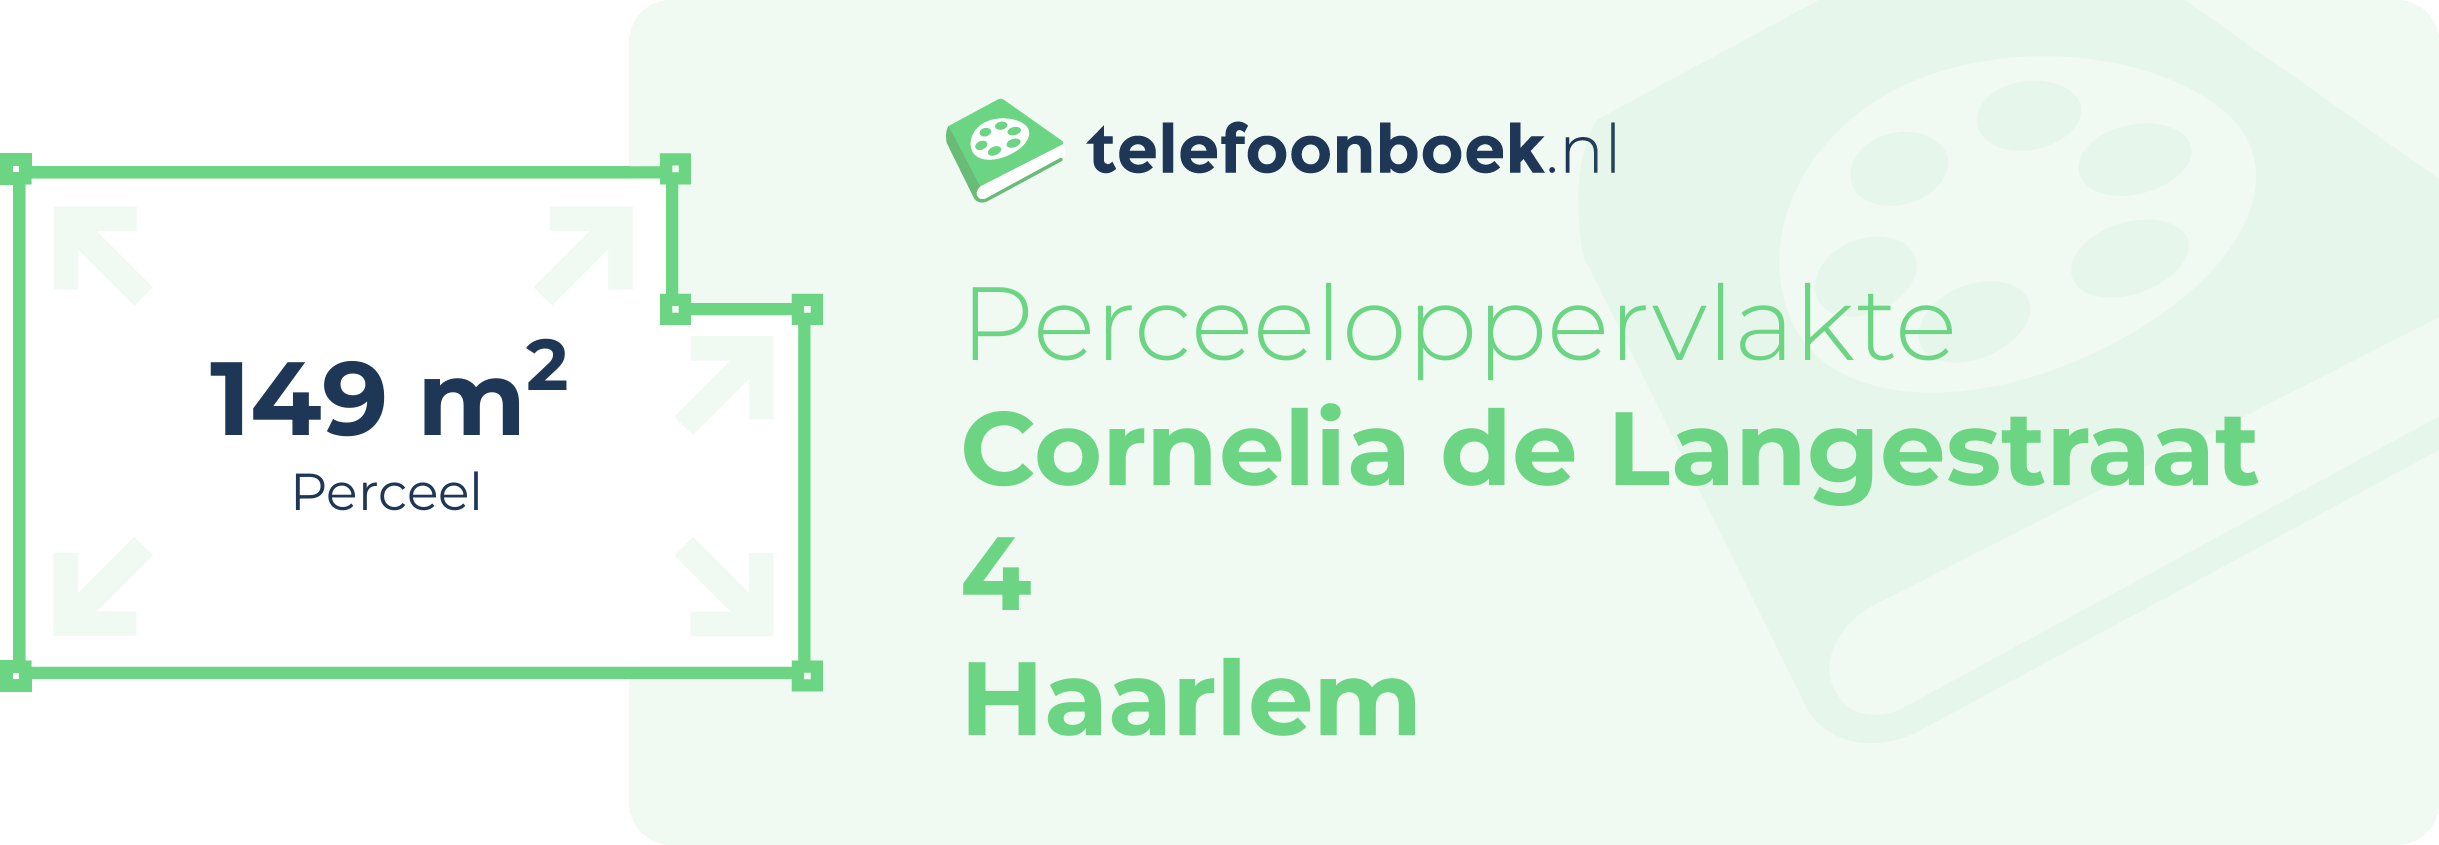 Perceeloppervlakte Cornelia De Langestraat 4 Haarlem